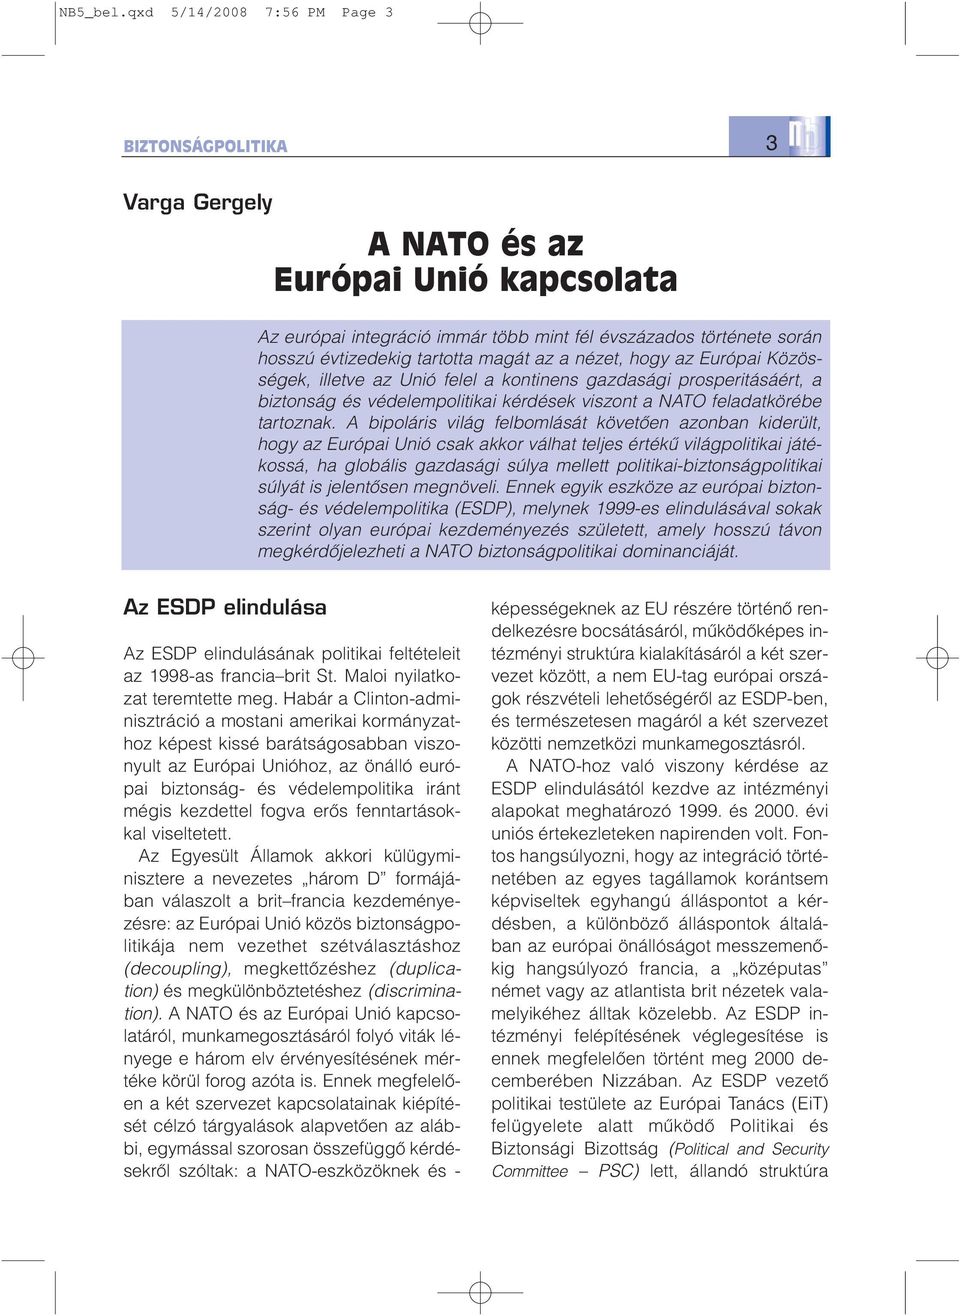 magát az a nézet, hogy az Európai Közösségek, illetve az Unió felel a kontinens gazdasági prosperitásáért, a biztonság és védelempolitikai kérdések viszont a NATO feladatkörébe tartoznak.